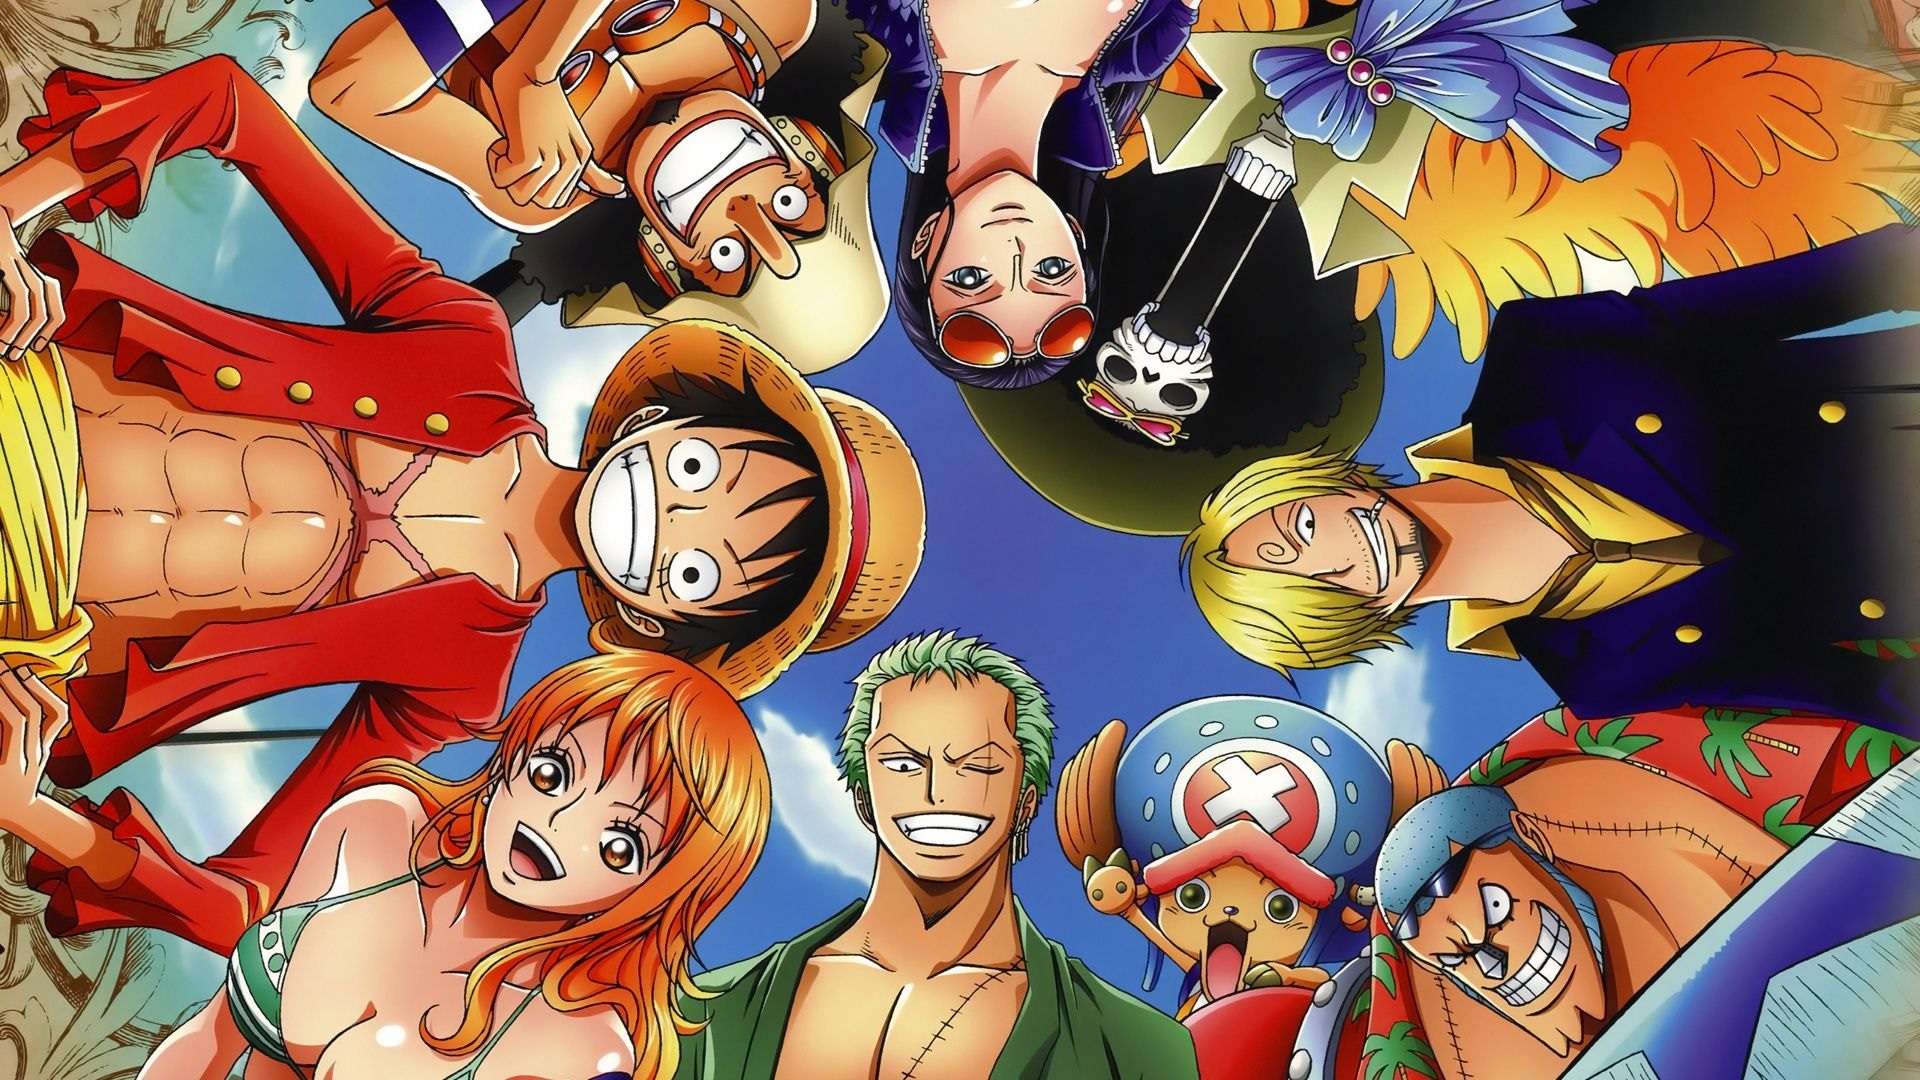 Nếu bạn là fan của anime One Piece, bạn chắc chắn sẽ thích các hình ảnh về bộ truyện này đúng không? Hãy cùng đắm chìm vào thế giới đầy màu sắc và phiêu lưu cùng băng hải tặc Mũ Rơm với những hình ảnh đẹp lung linh.